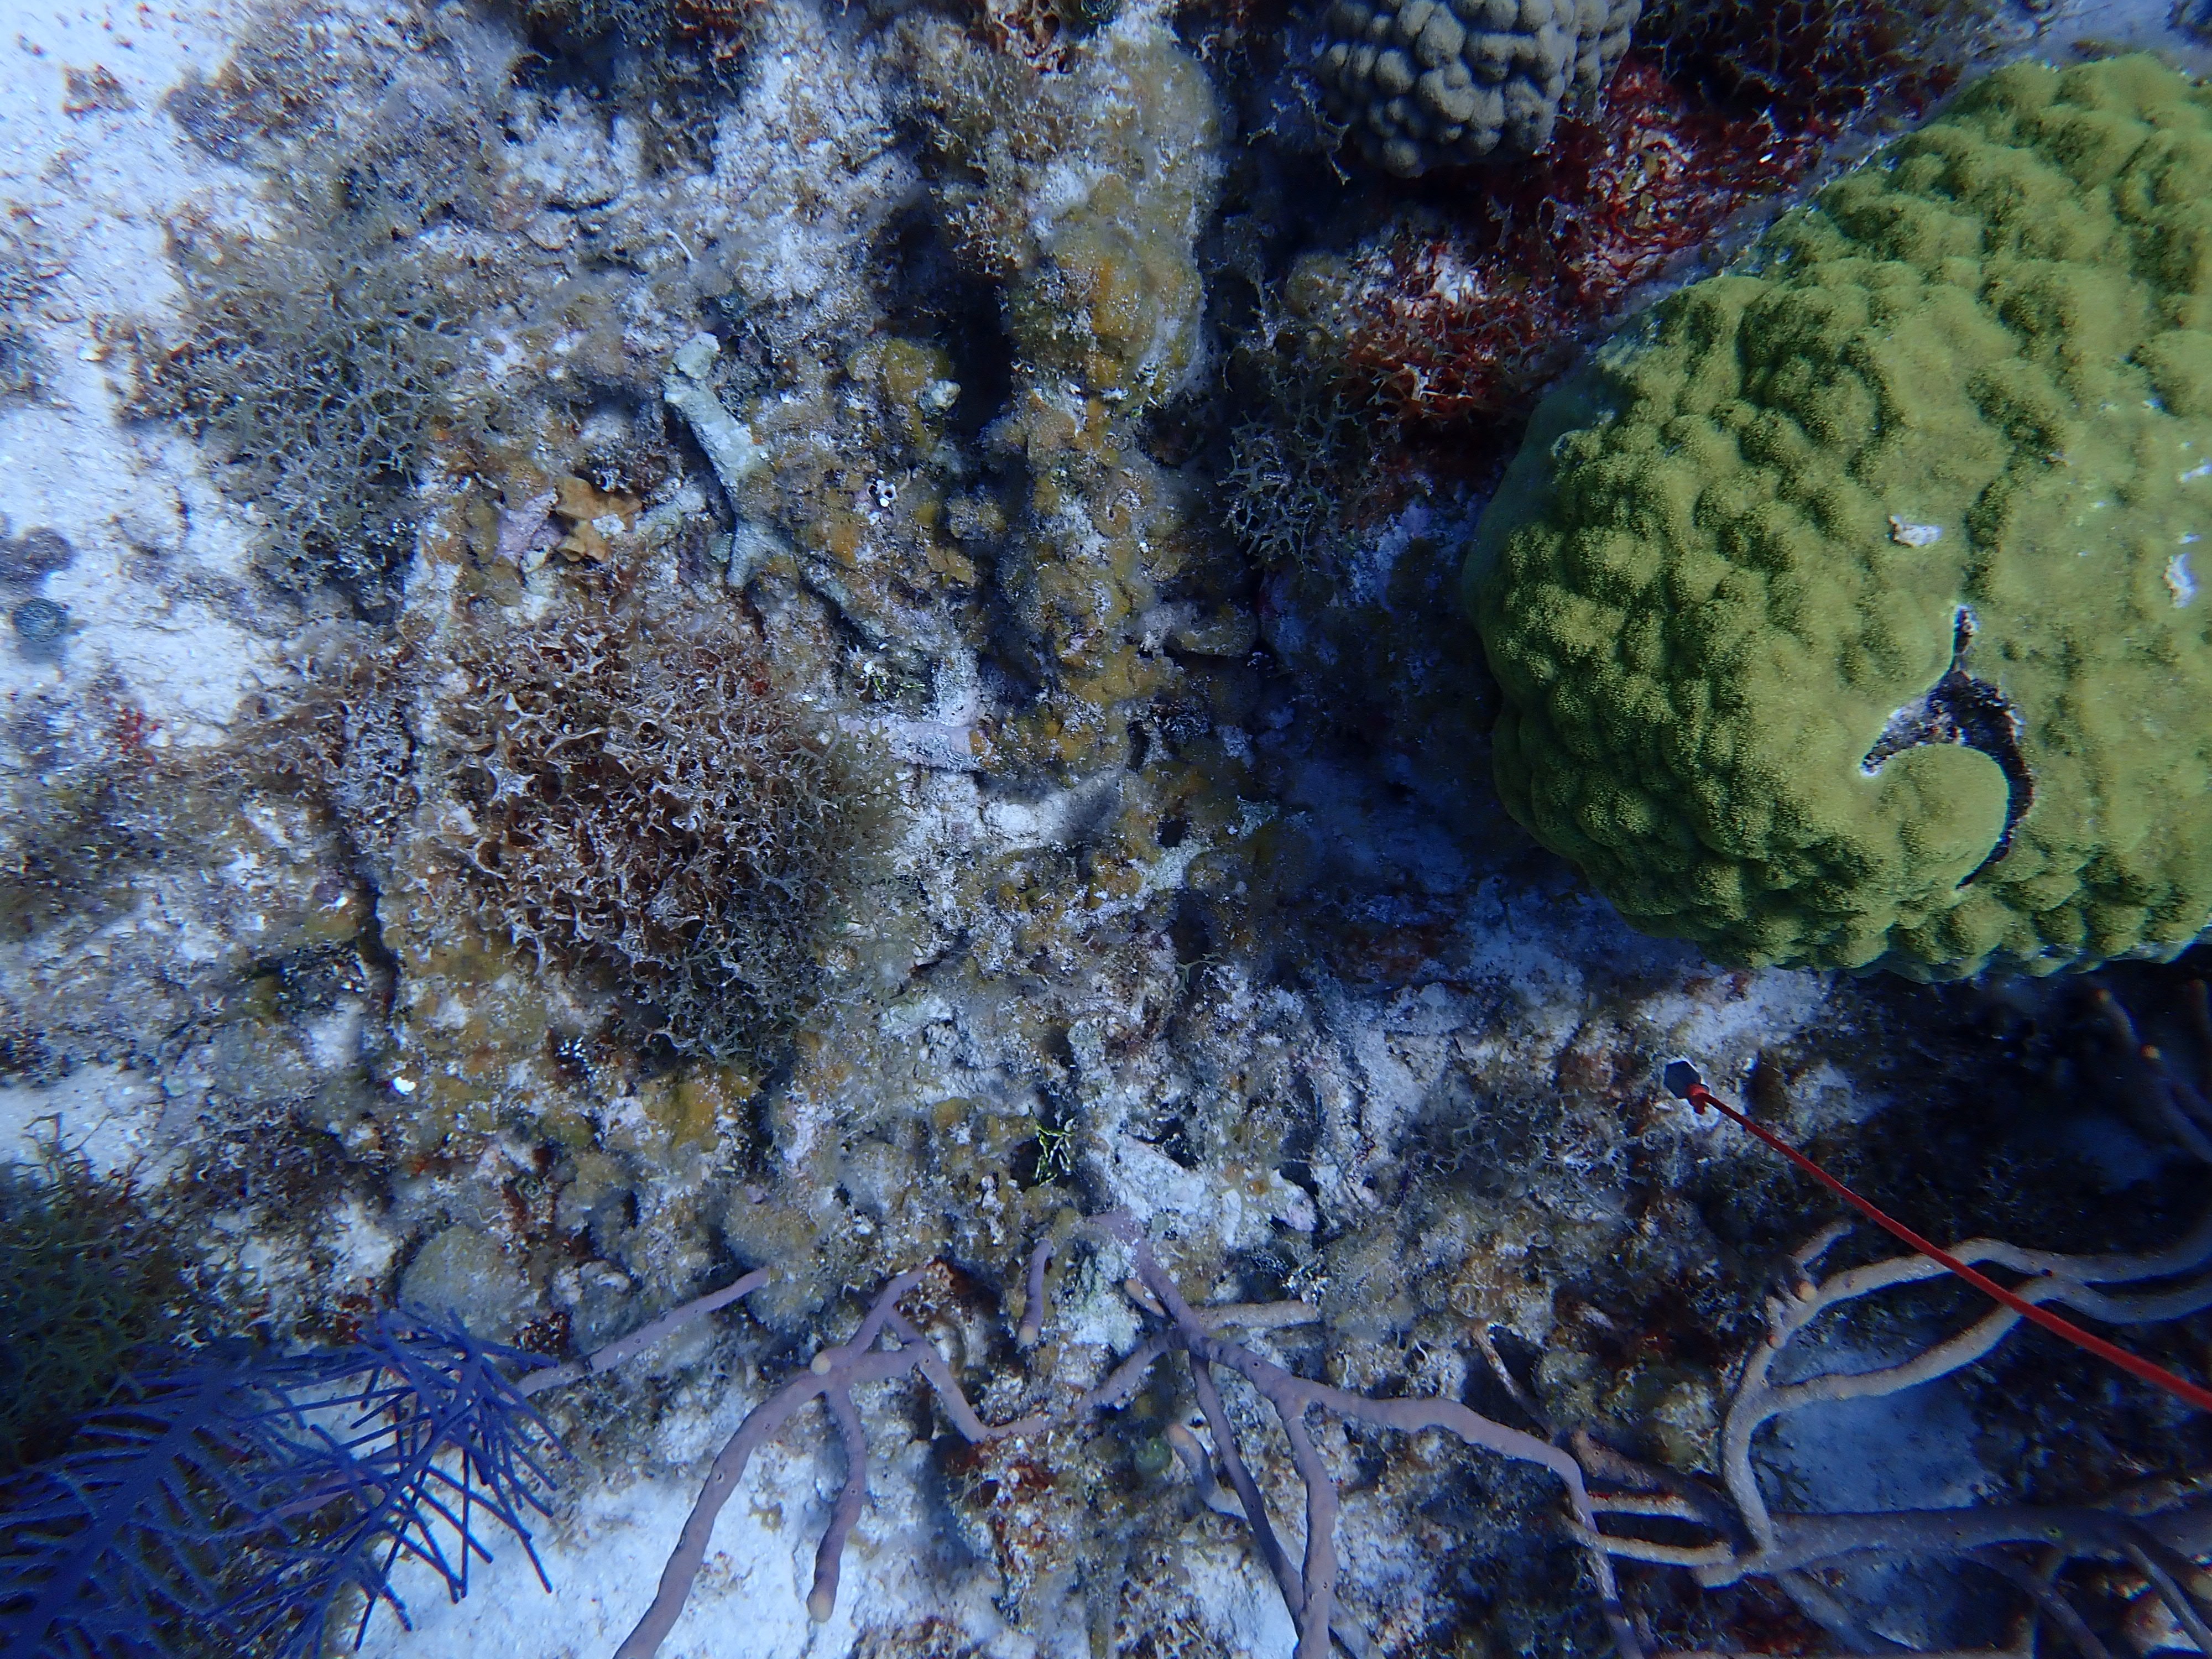 Reef 1 sample